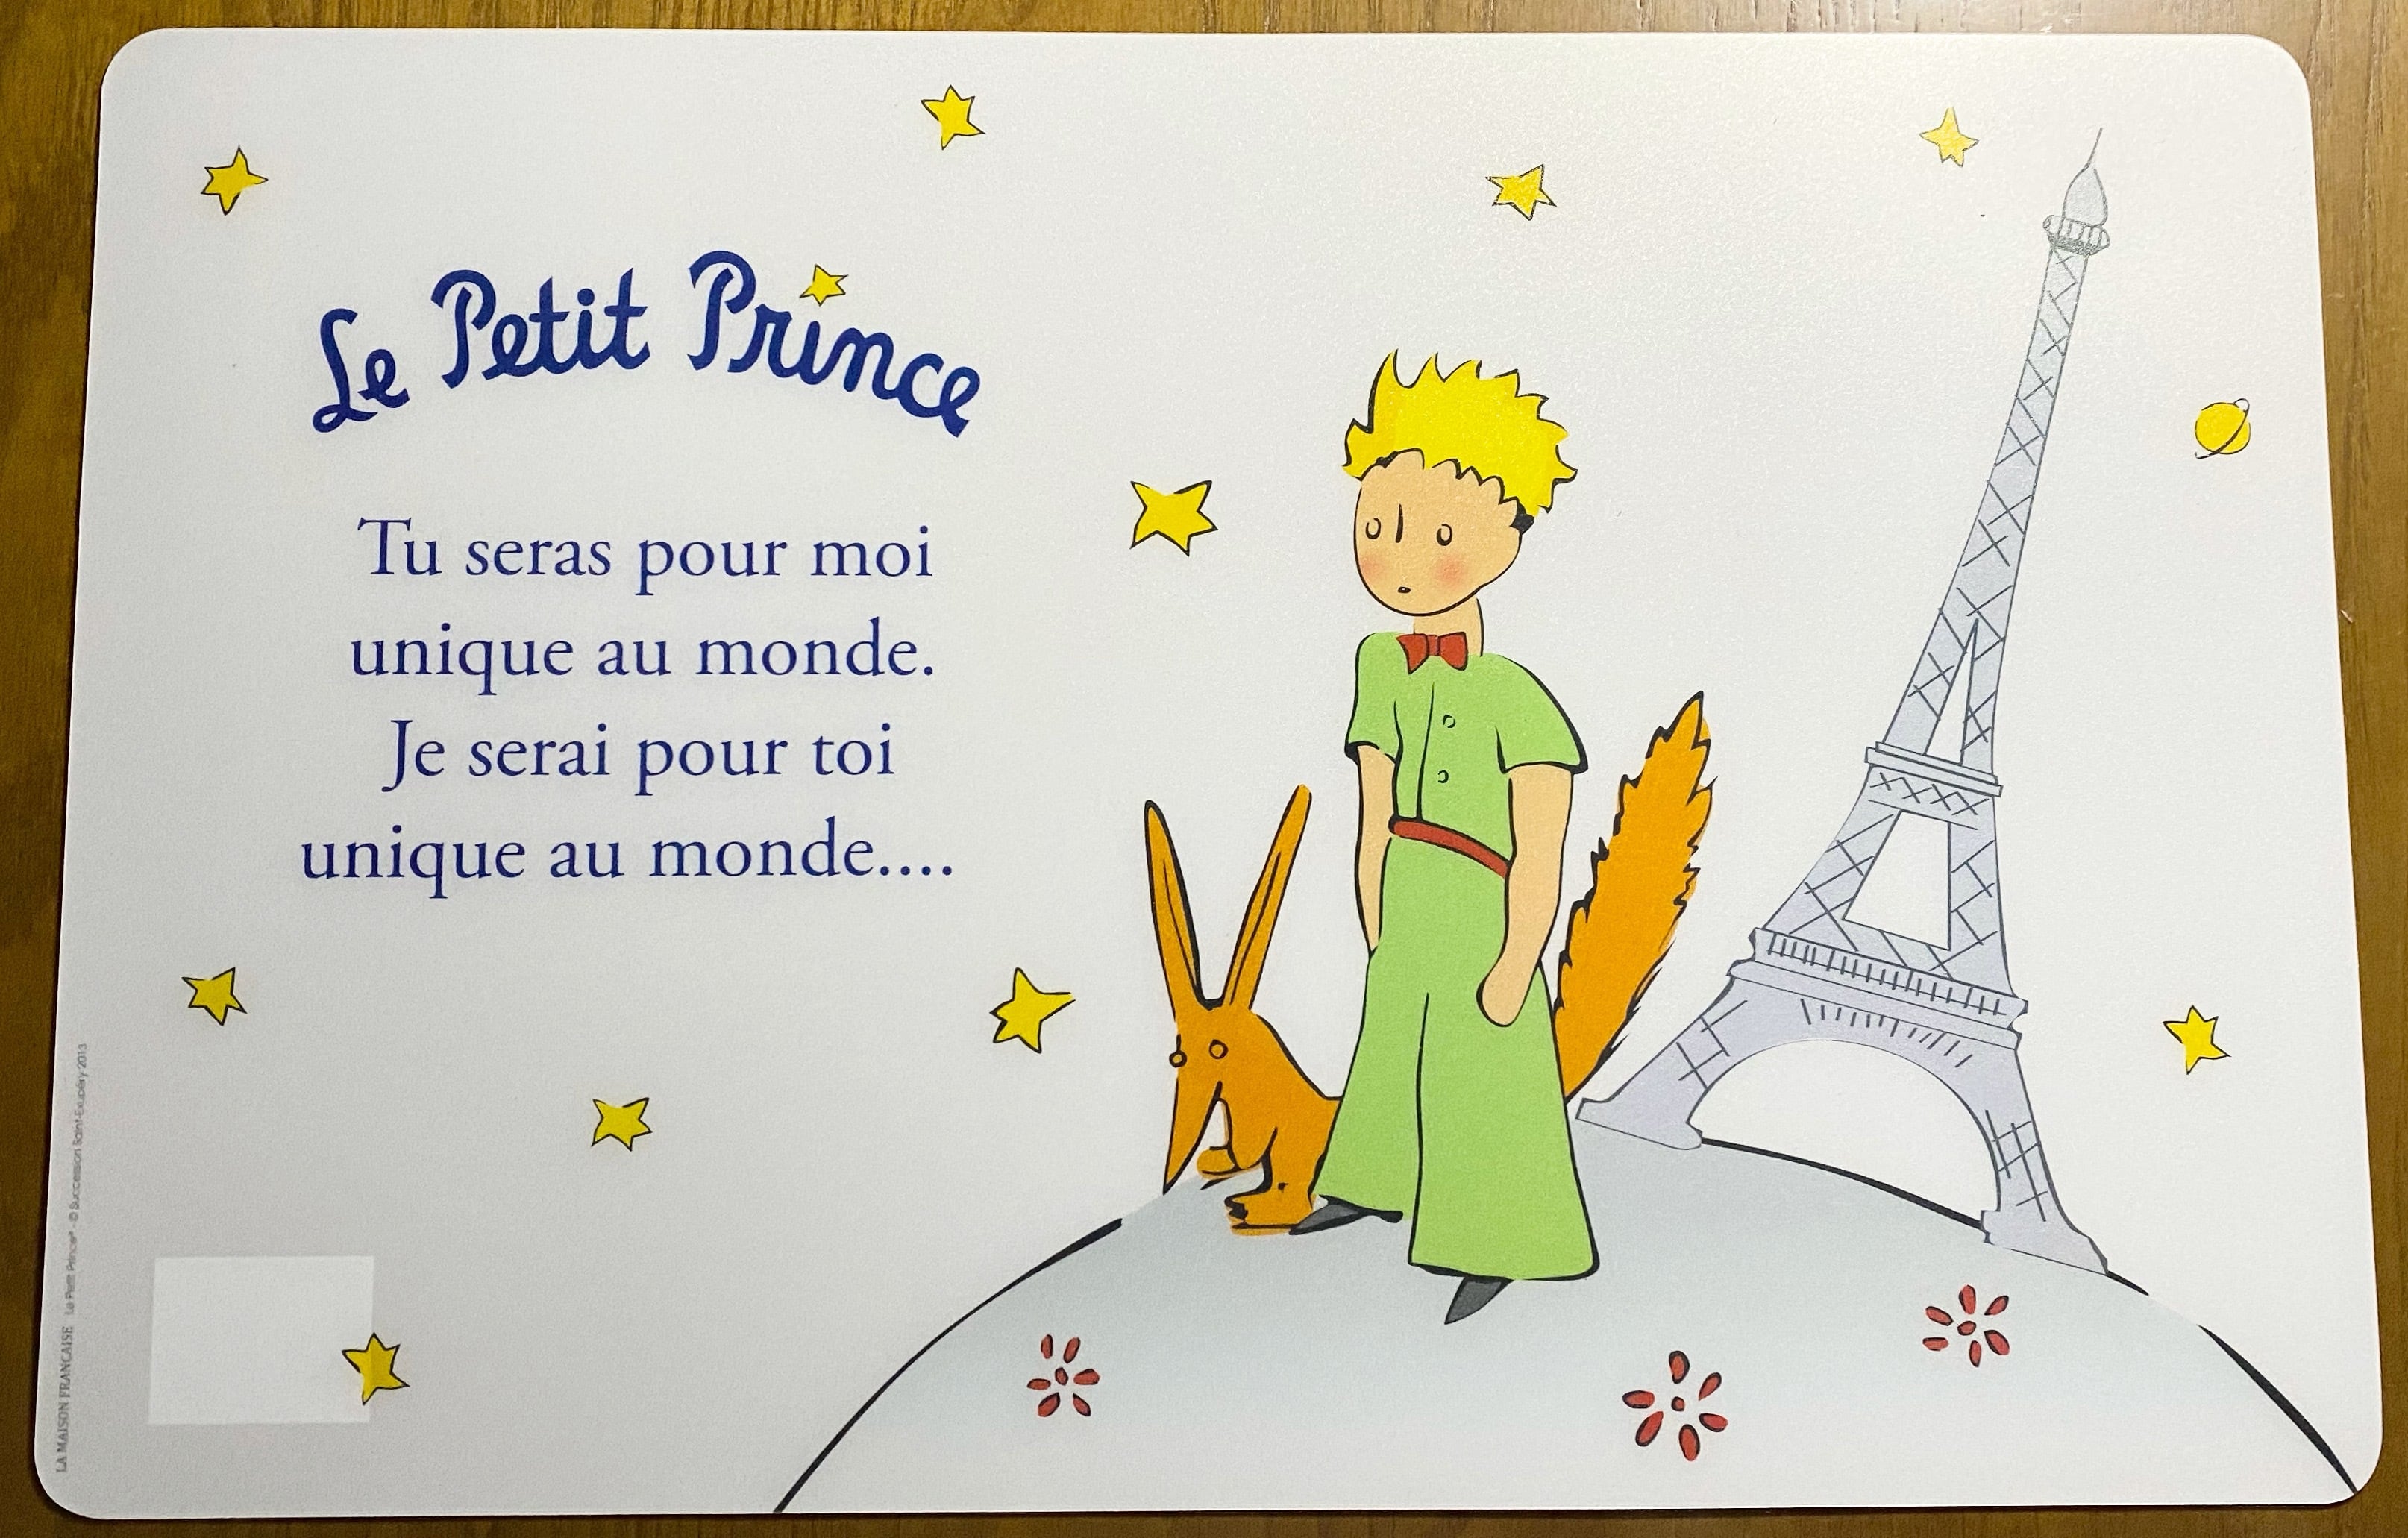 星の王子さま ランチョンマット 2枚セット フランス le petit prince フランス雑貨 輸入雑貨 The little prince  franceshop